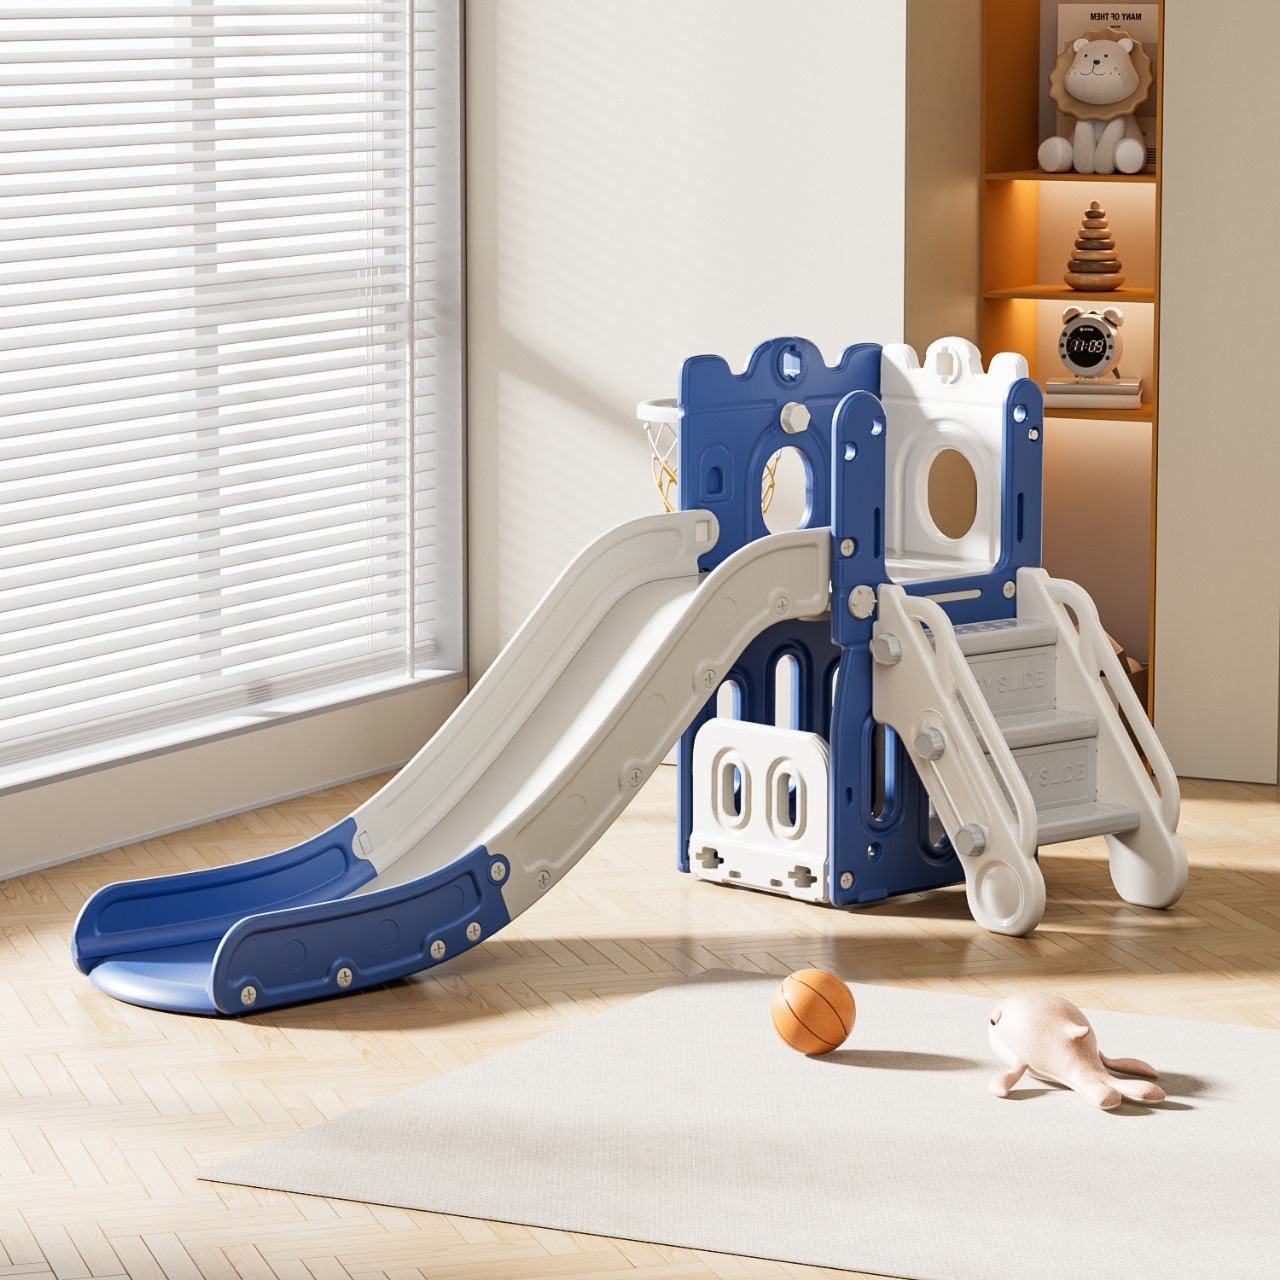 Royal Stairway Adventure: Slide, Hoop & Storage Playset - Indoor Kids ...